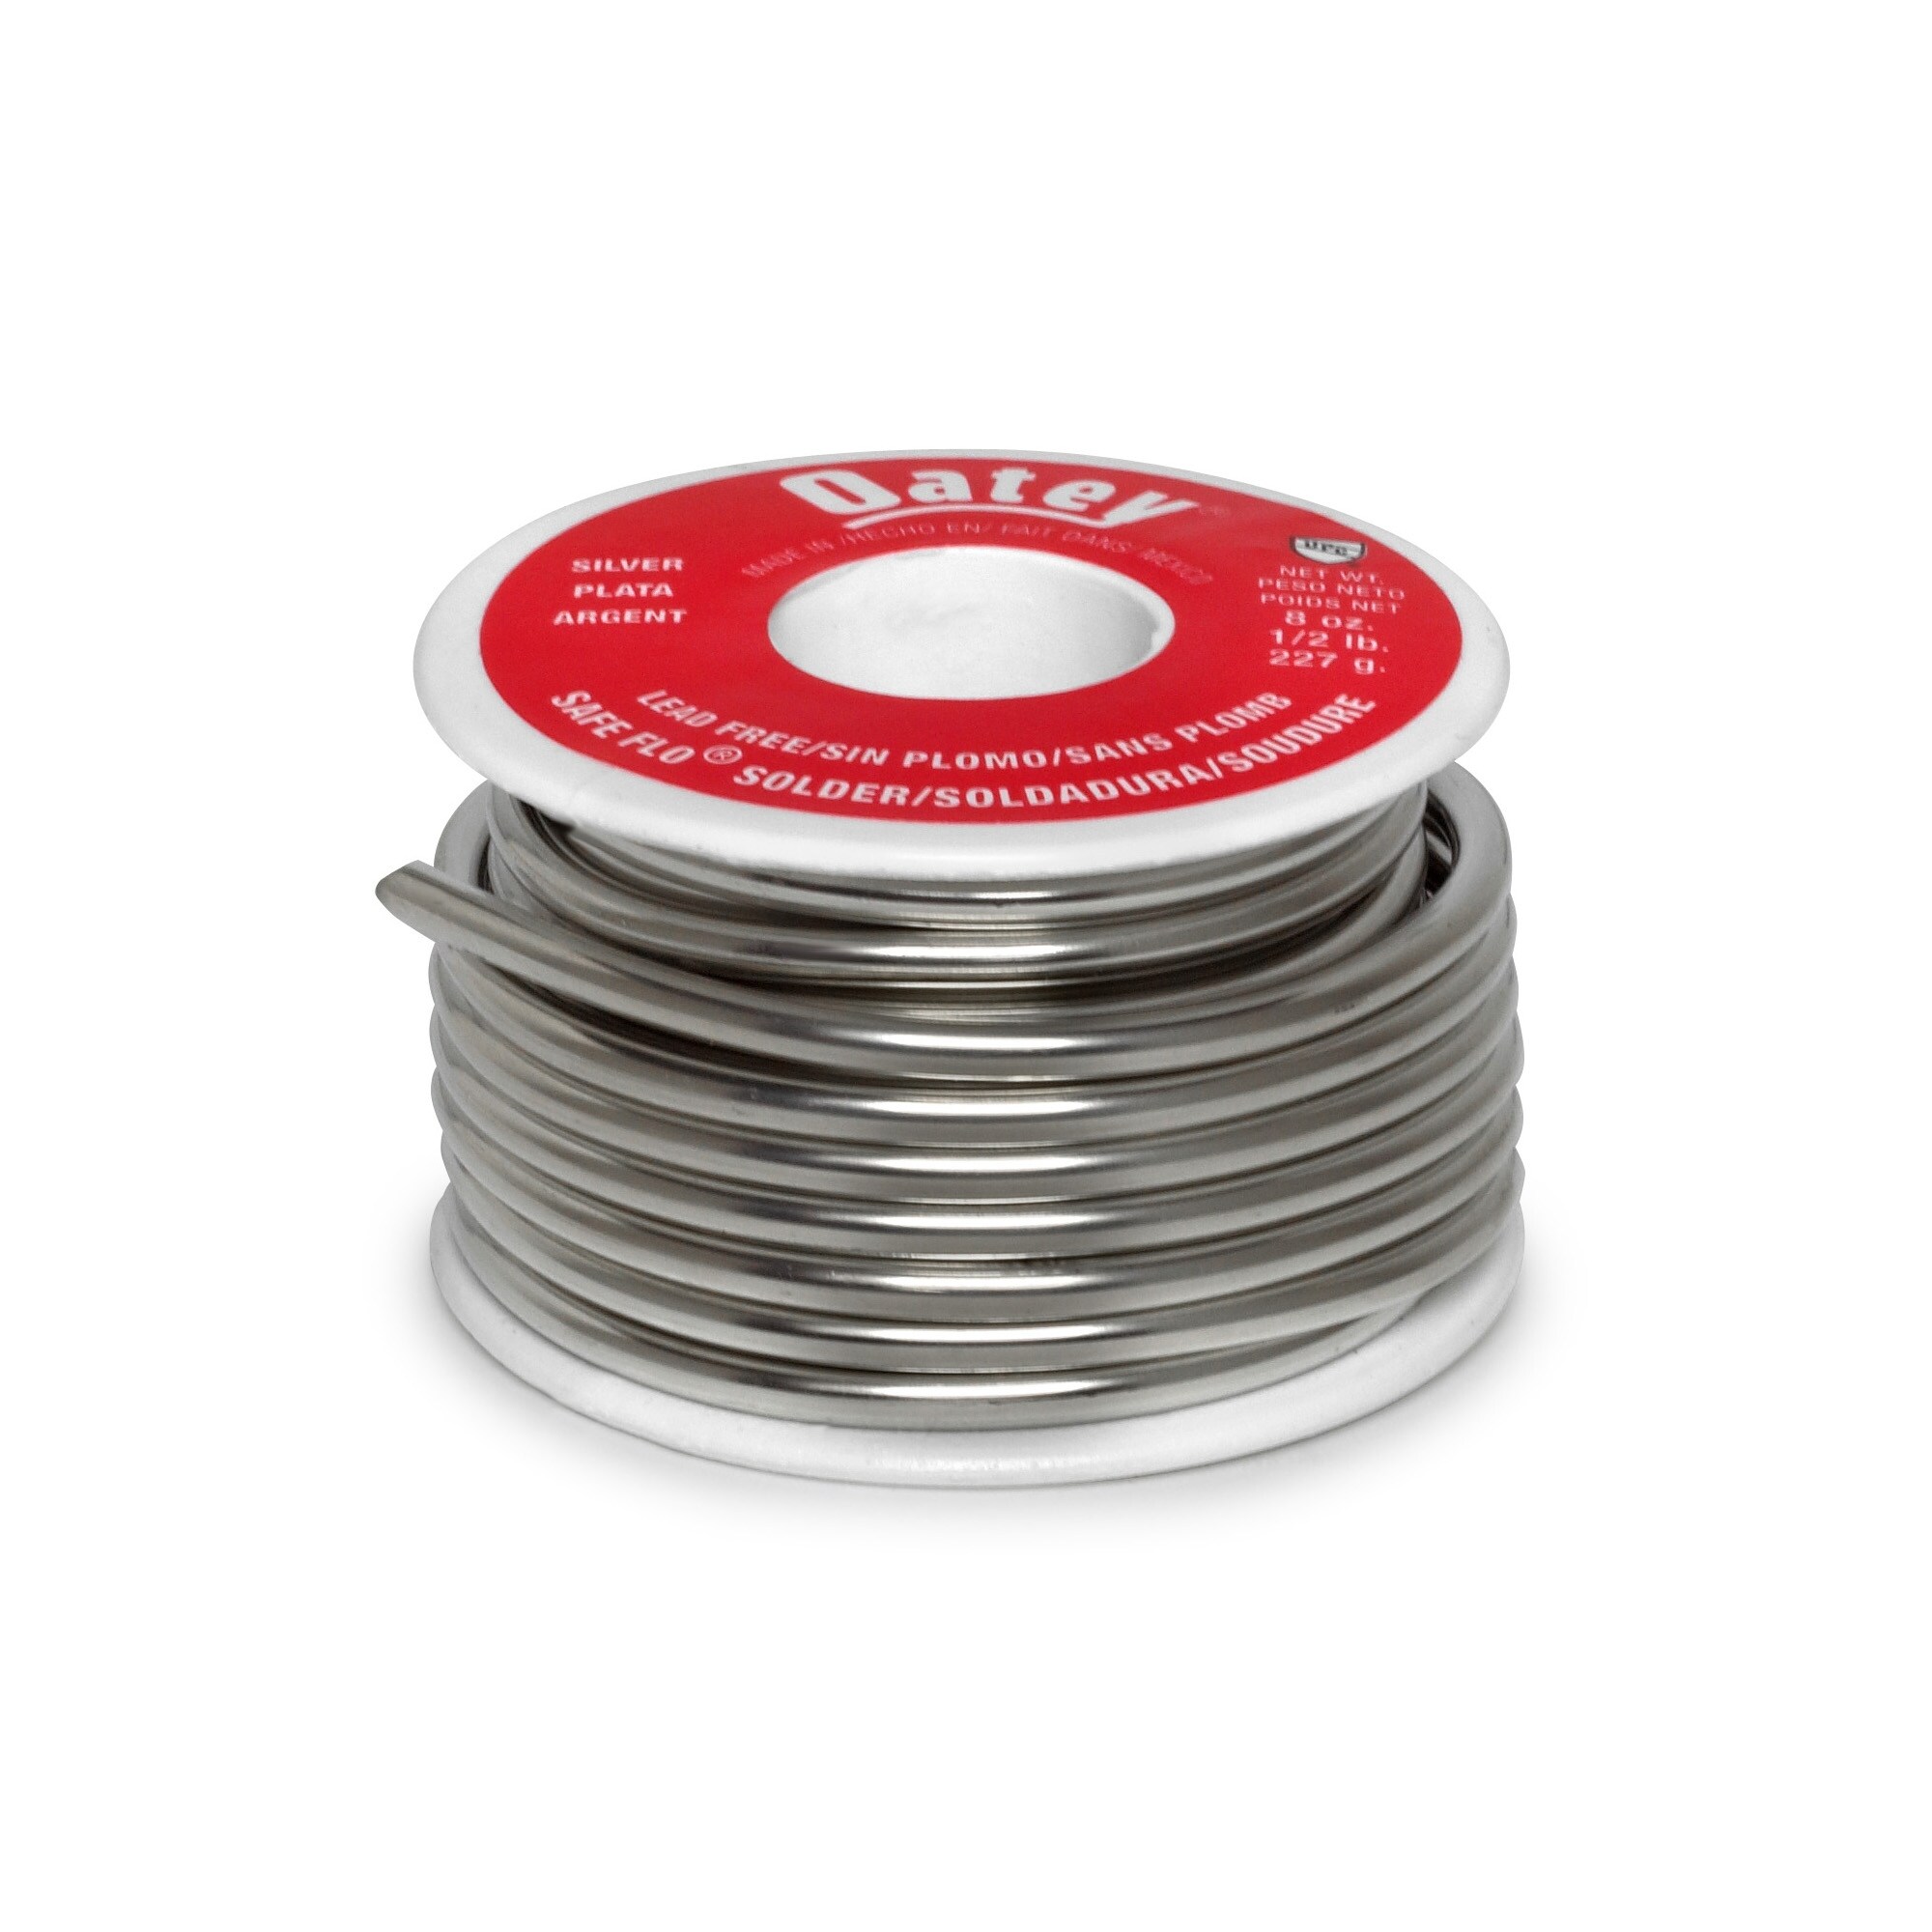 Oatey Safe Flo 8 oz. Lead-Free Silver Solder Wire (2-Pack) 290242